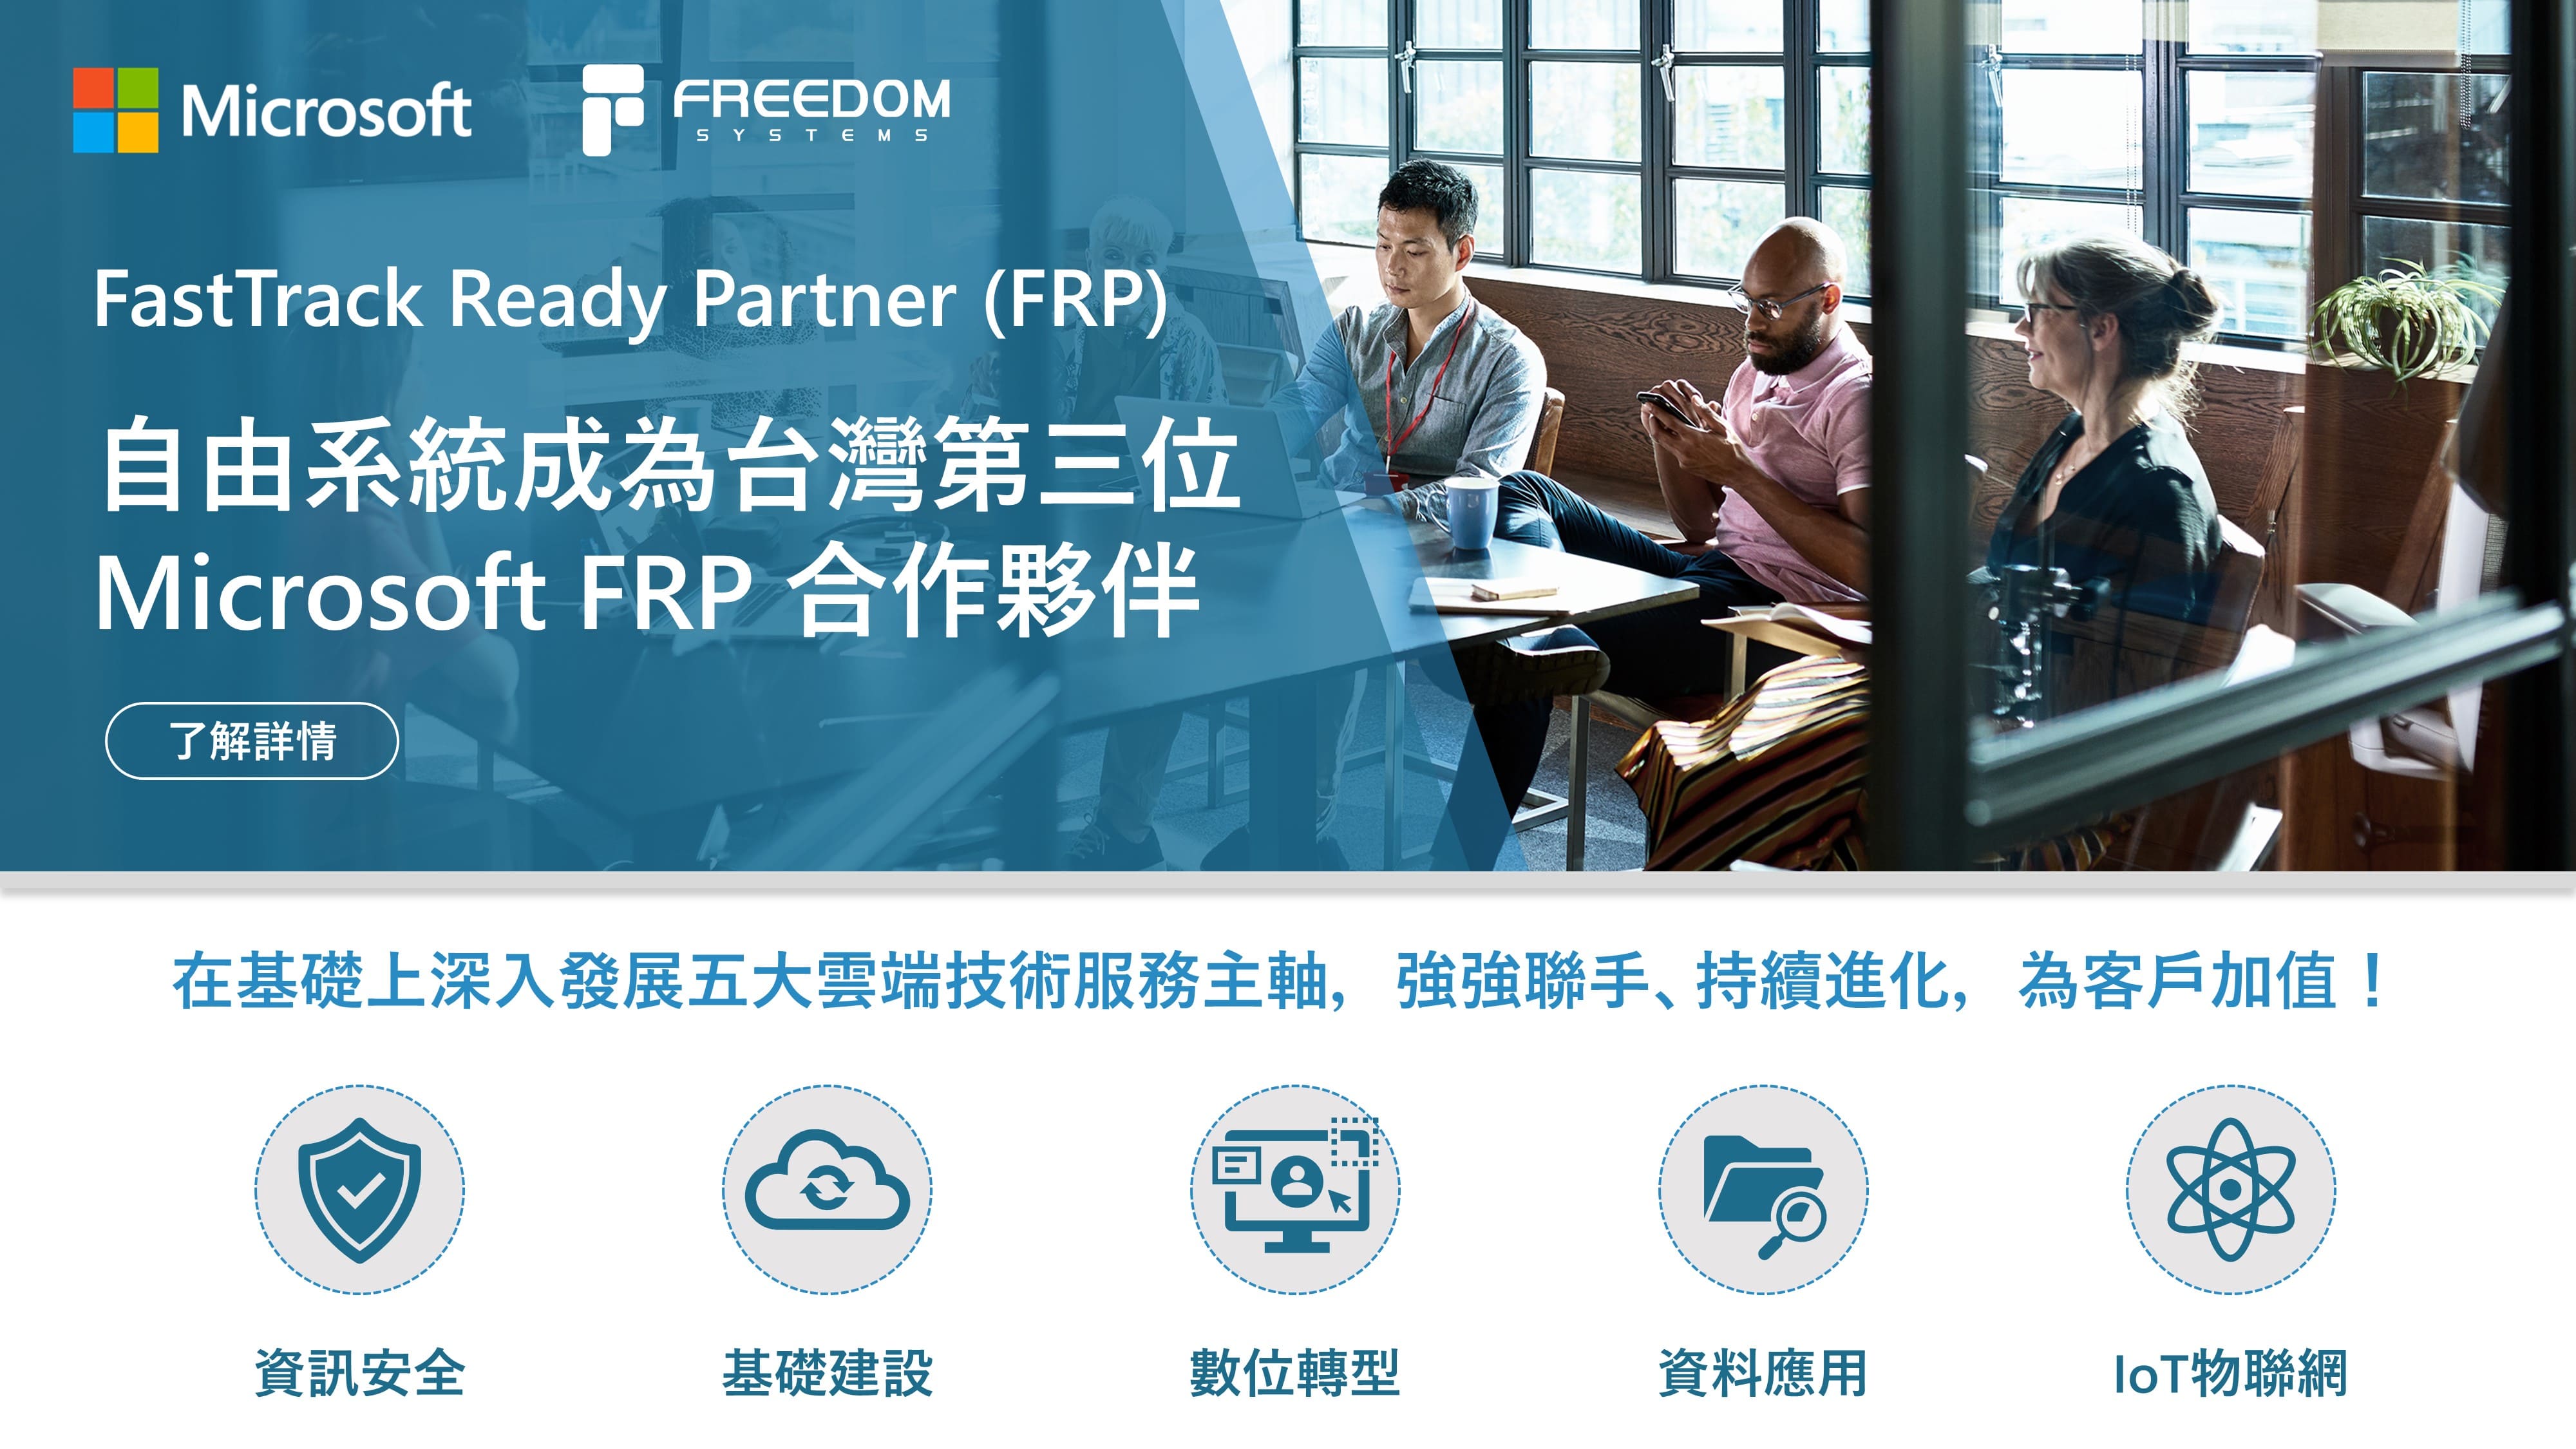 自由系統成為第三位微軟 FRP 合作夥伴 協助企業控管雲端網絡